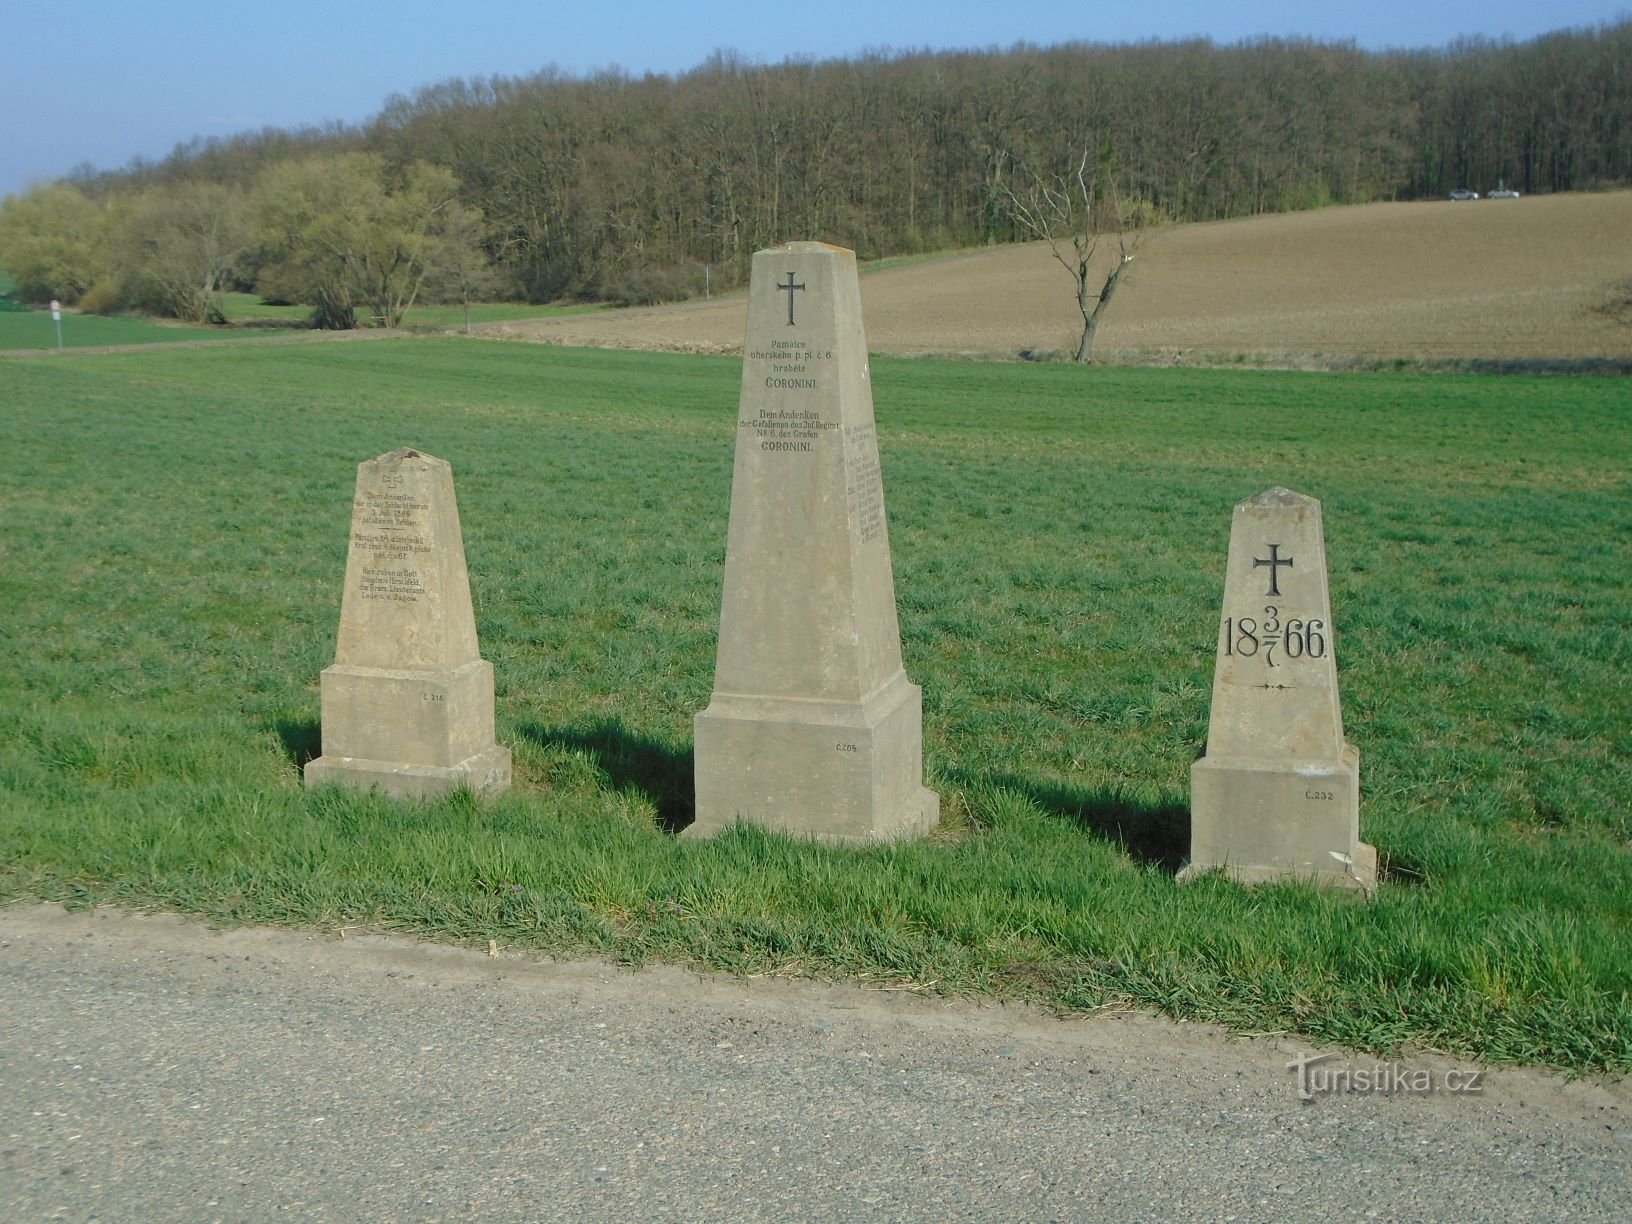 道路沿いの 1866 年の戦いの記念碑 (Čistěves、7.4.2019 年 XNUMX 月 XNUMX 日)